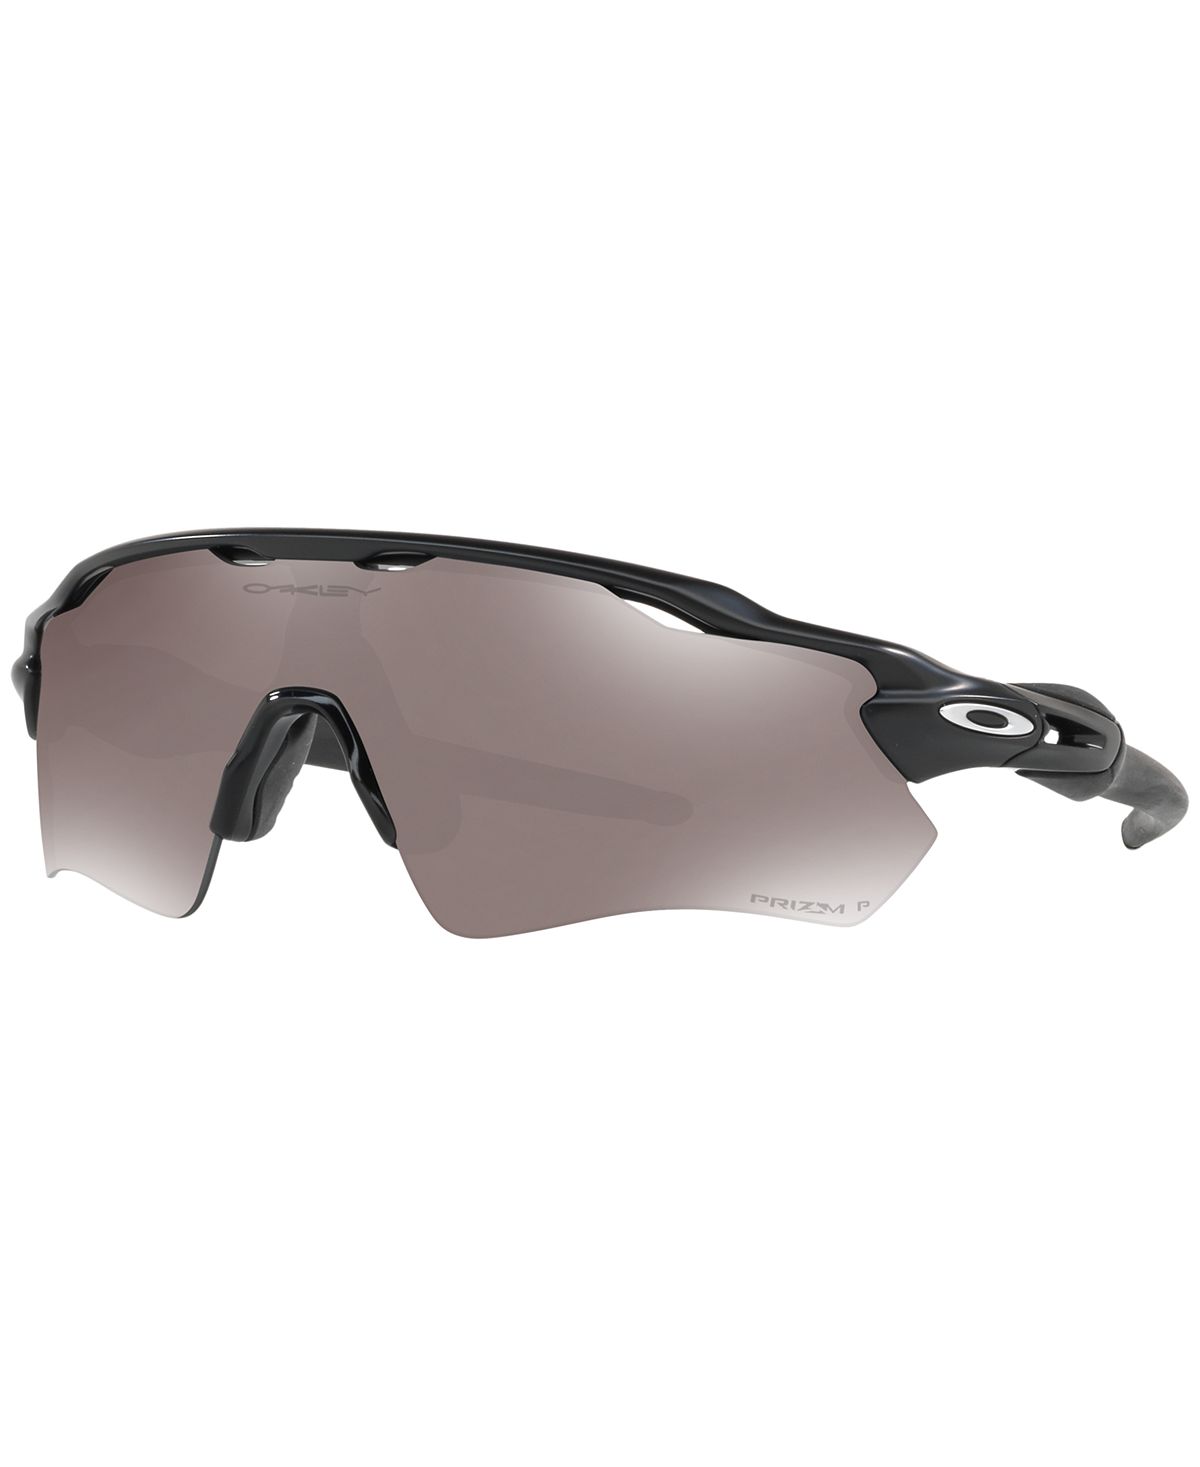 Мужские поляризационные солнцезащитные очки RADAR EV PATH OO9208 Oakley